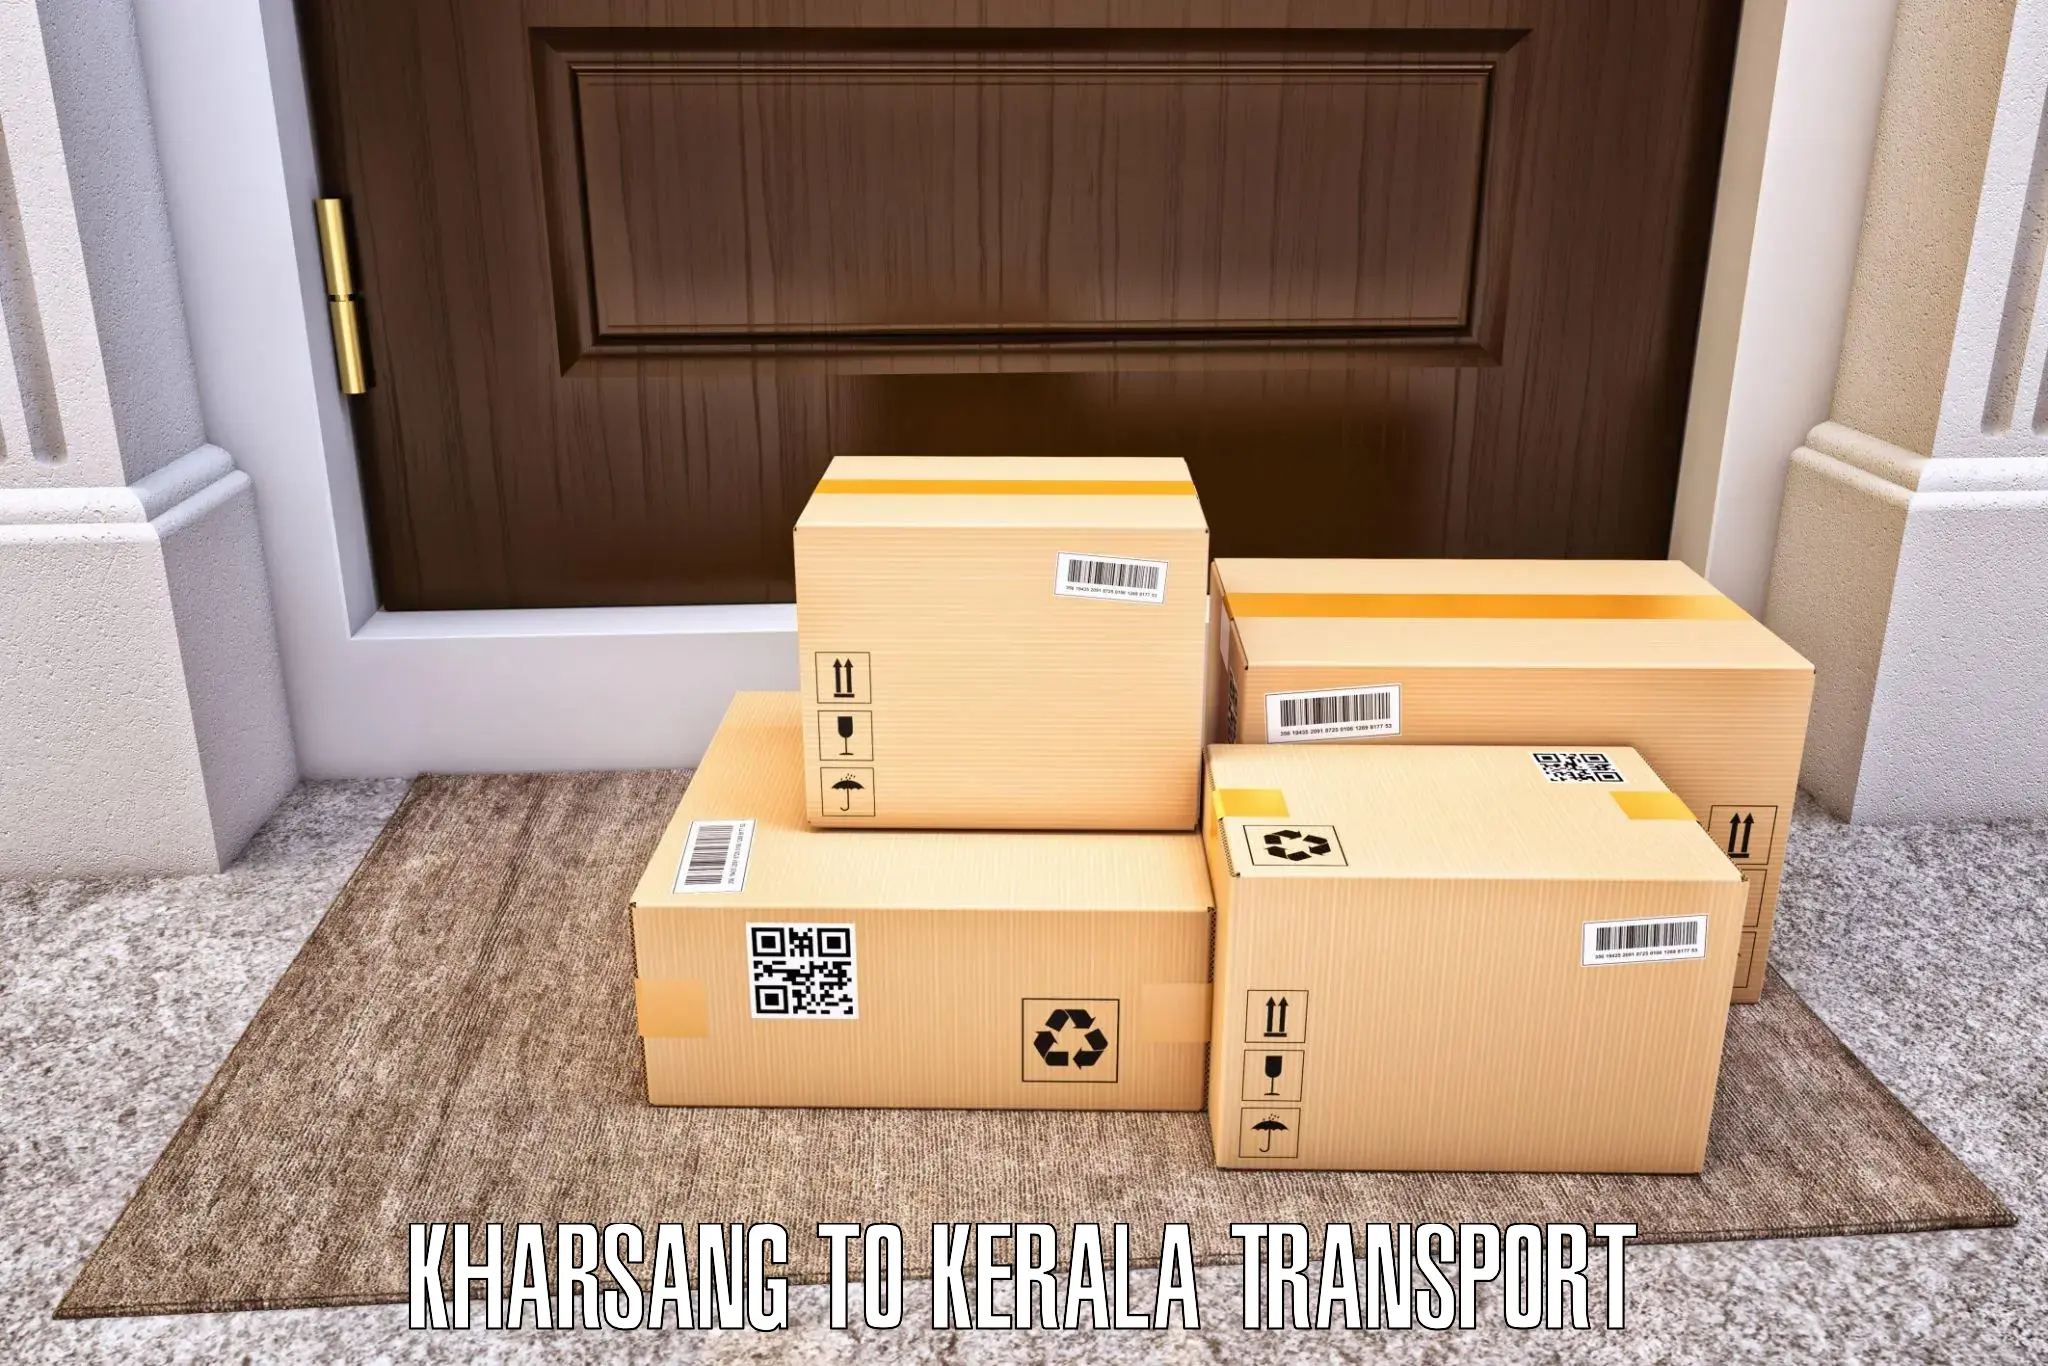 All India transport service Kharsang to Karunagappally